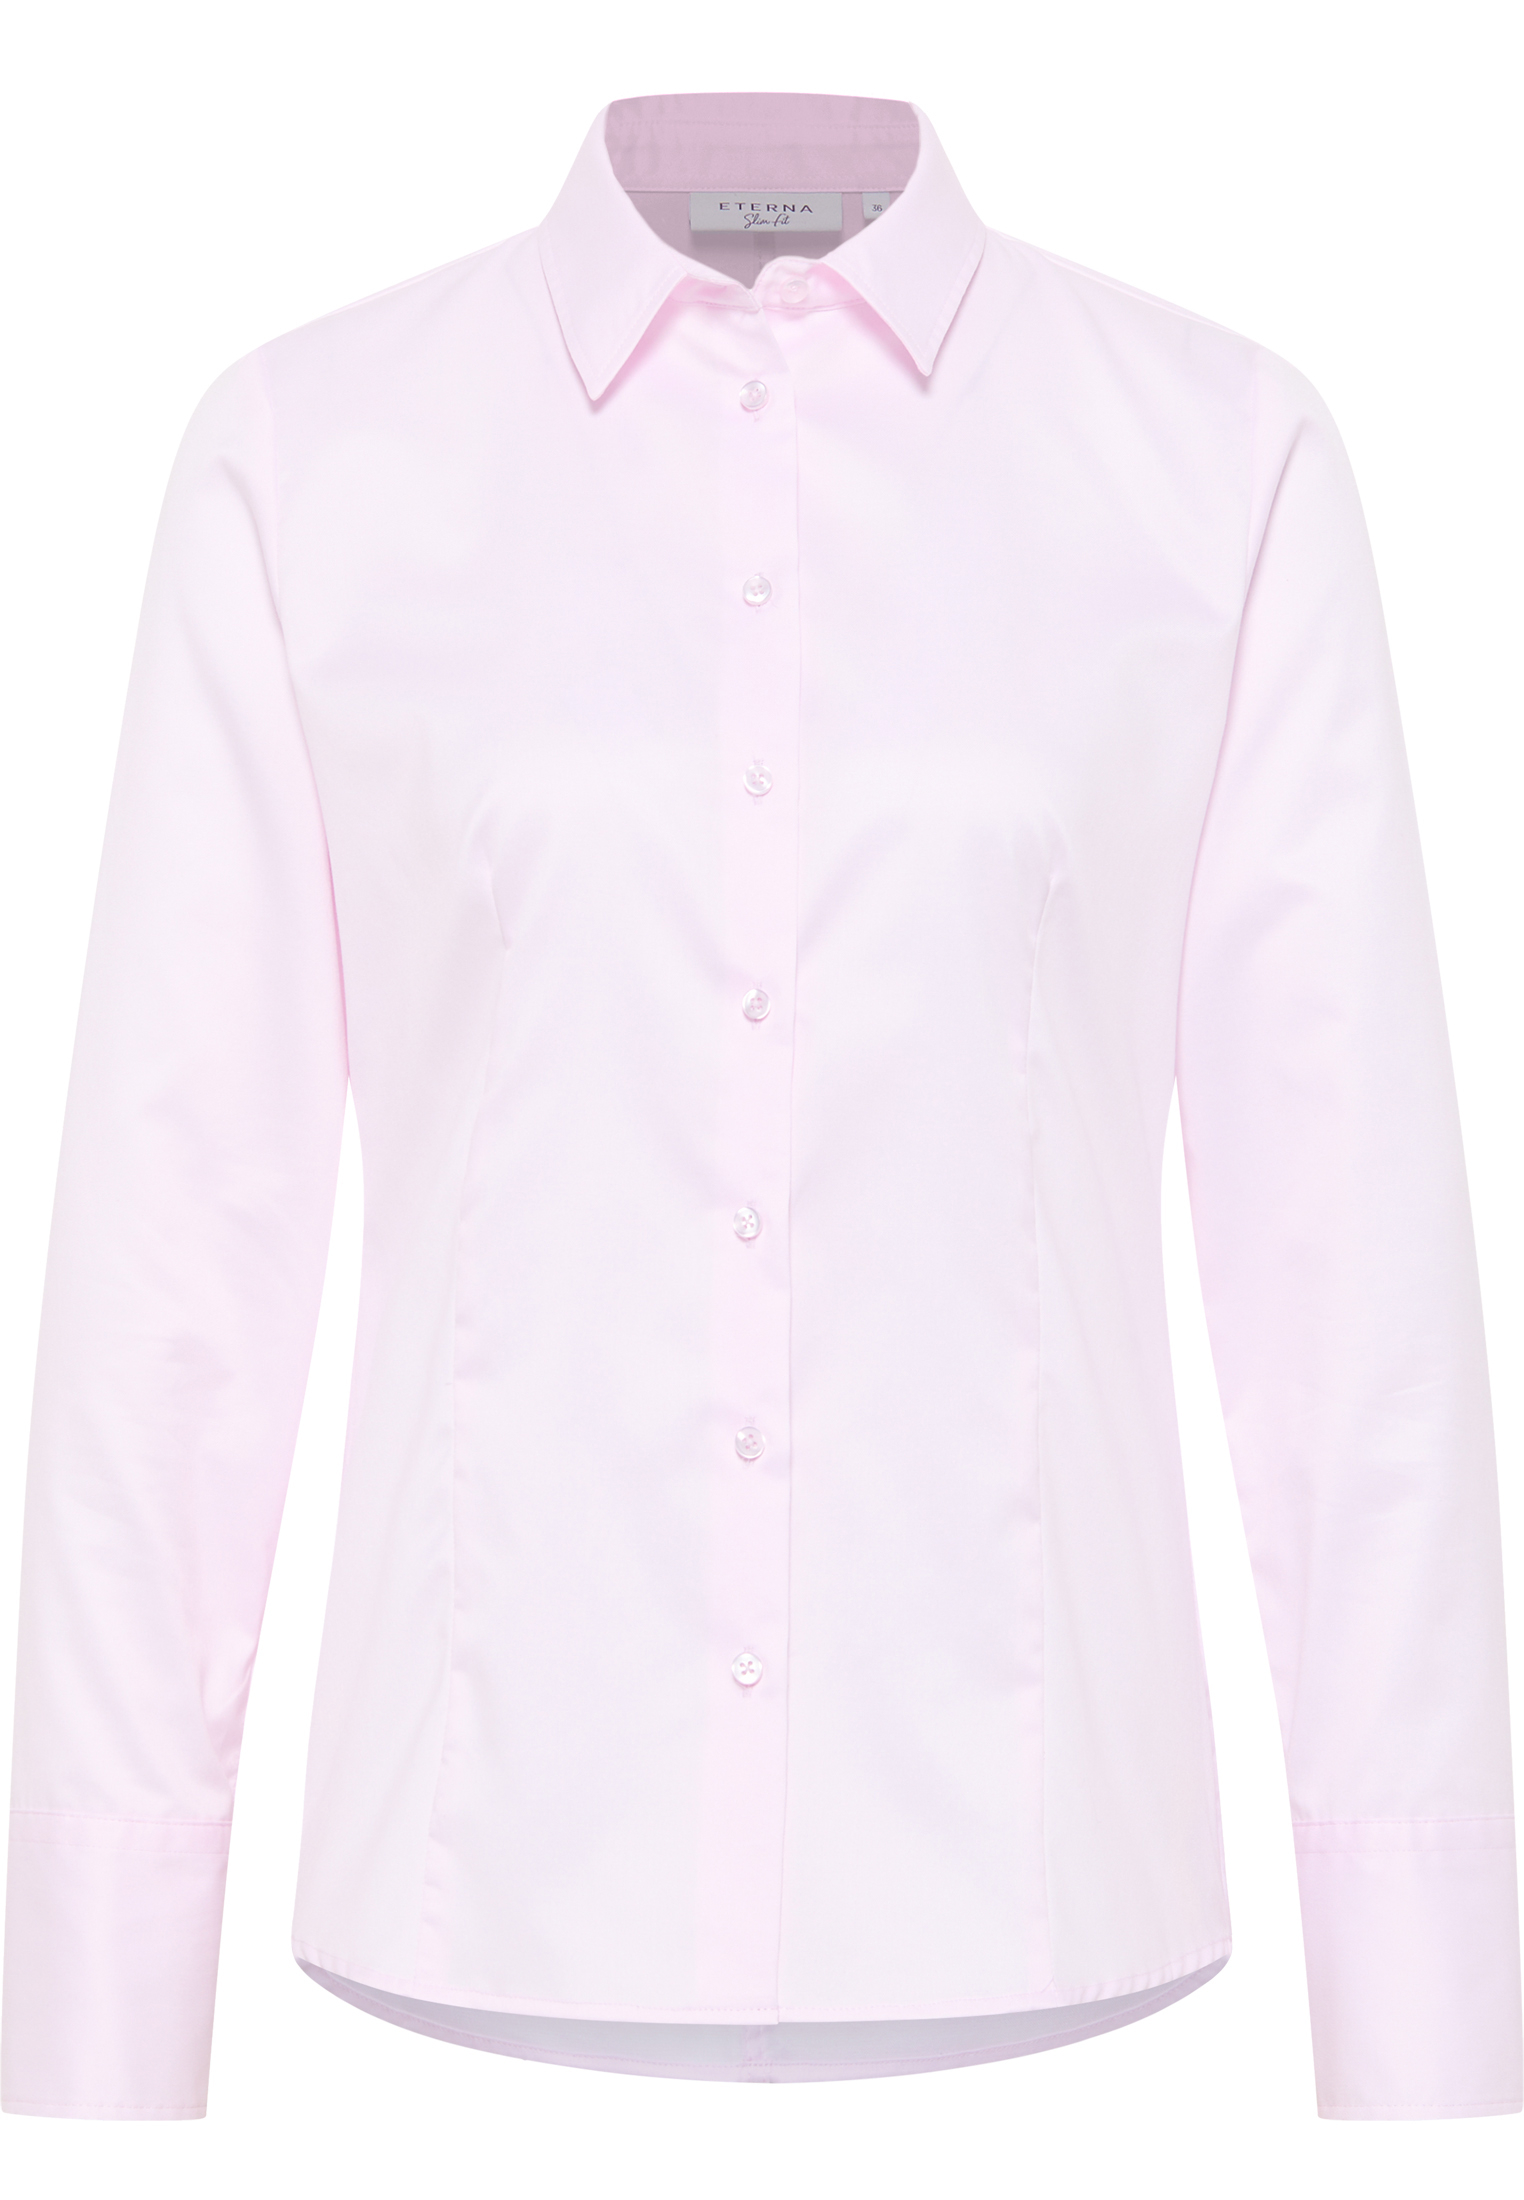 in | | rose plain | Blouse 50 sleeve long Shirt Cover 2BL00075-15-11-50-1/1 | rose